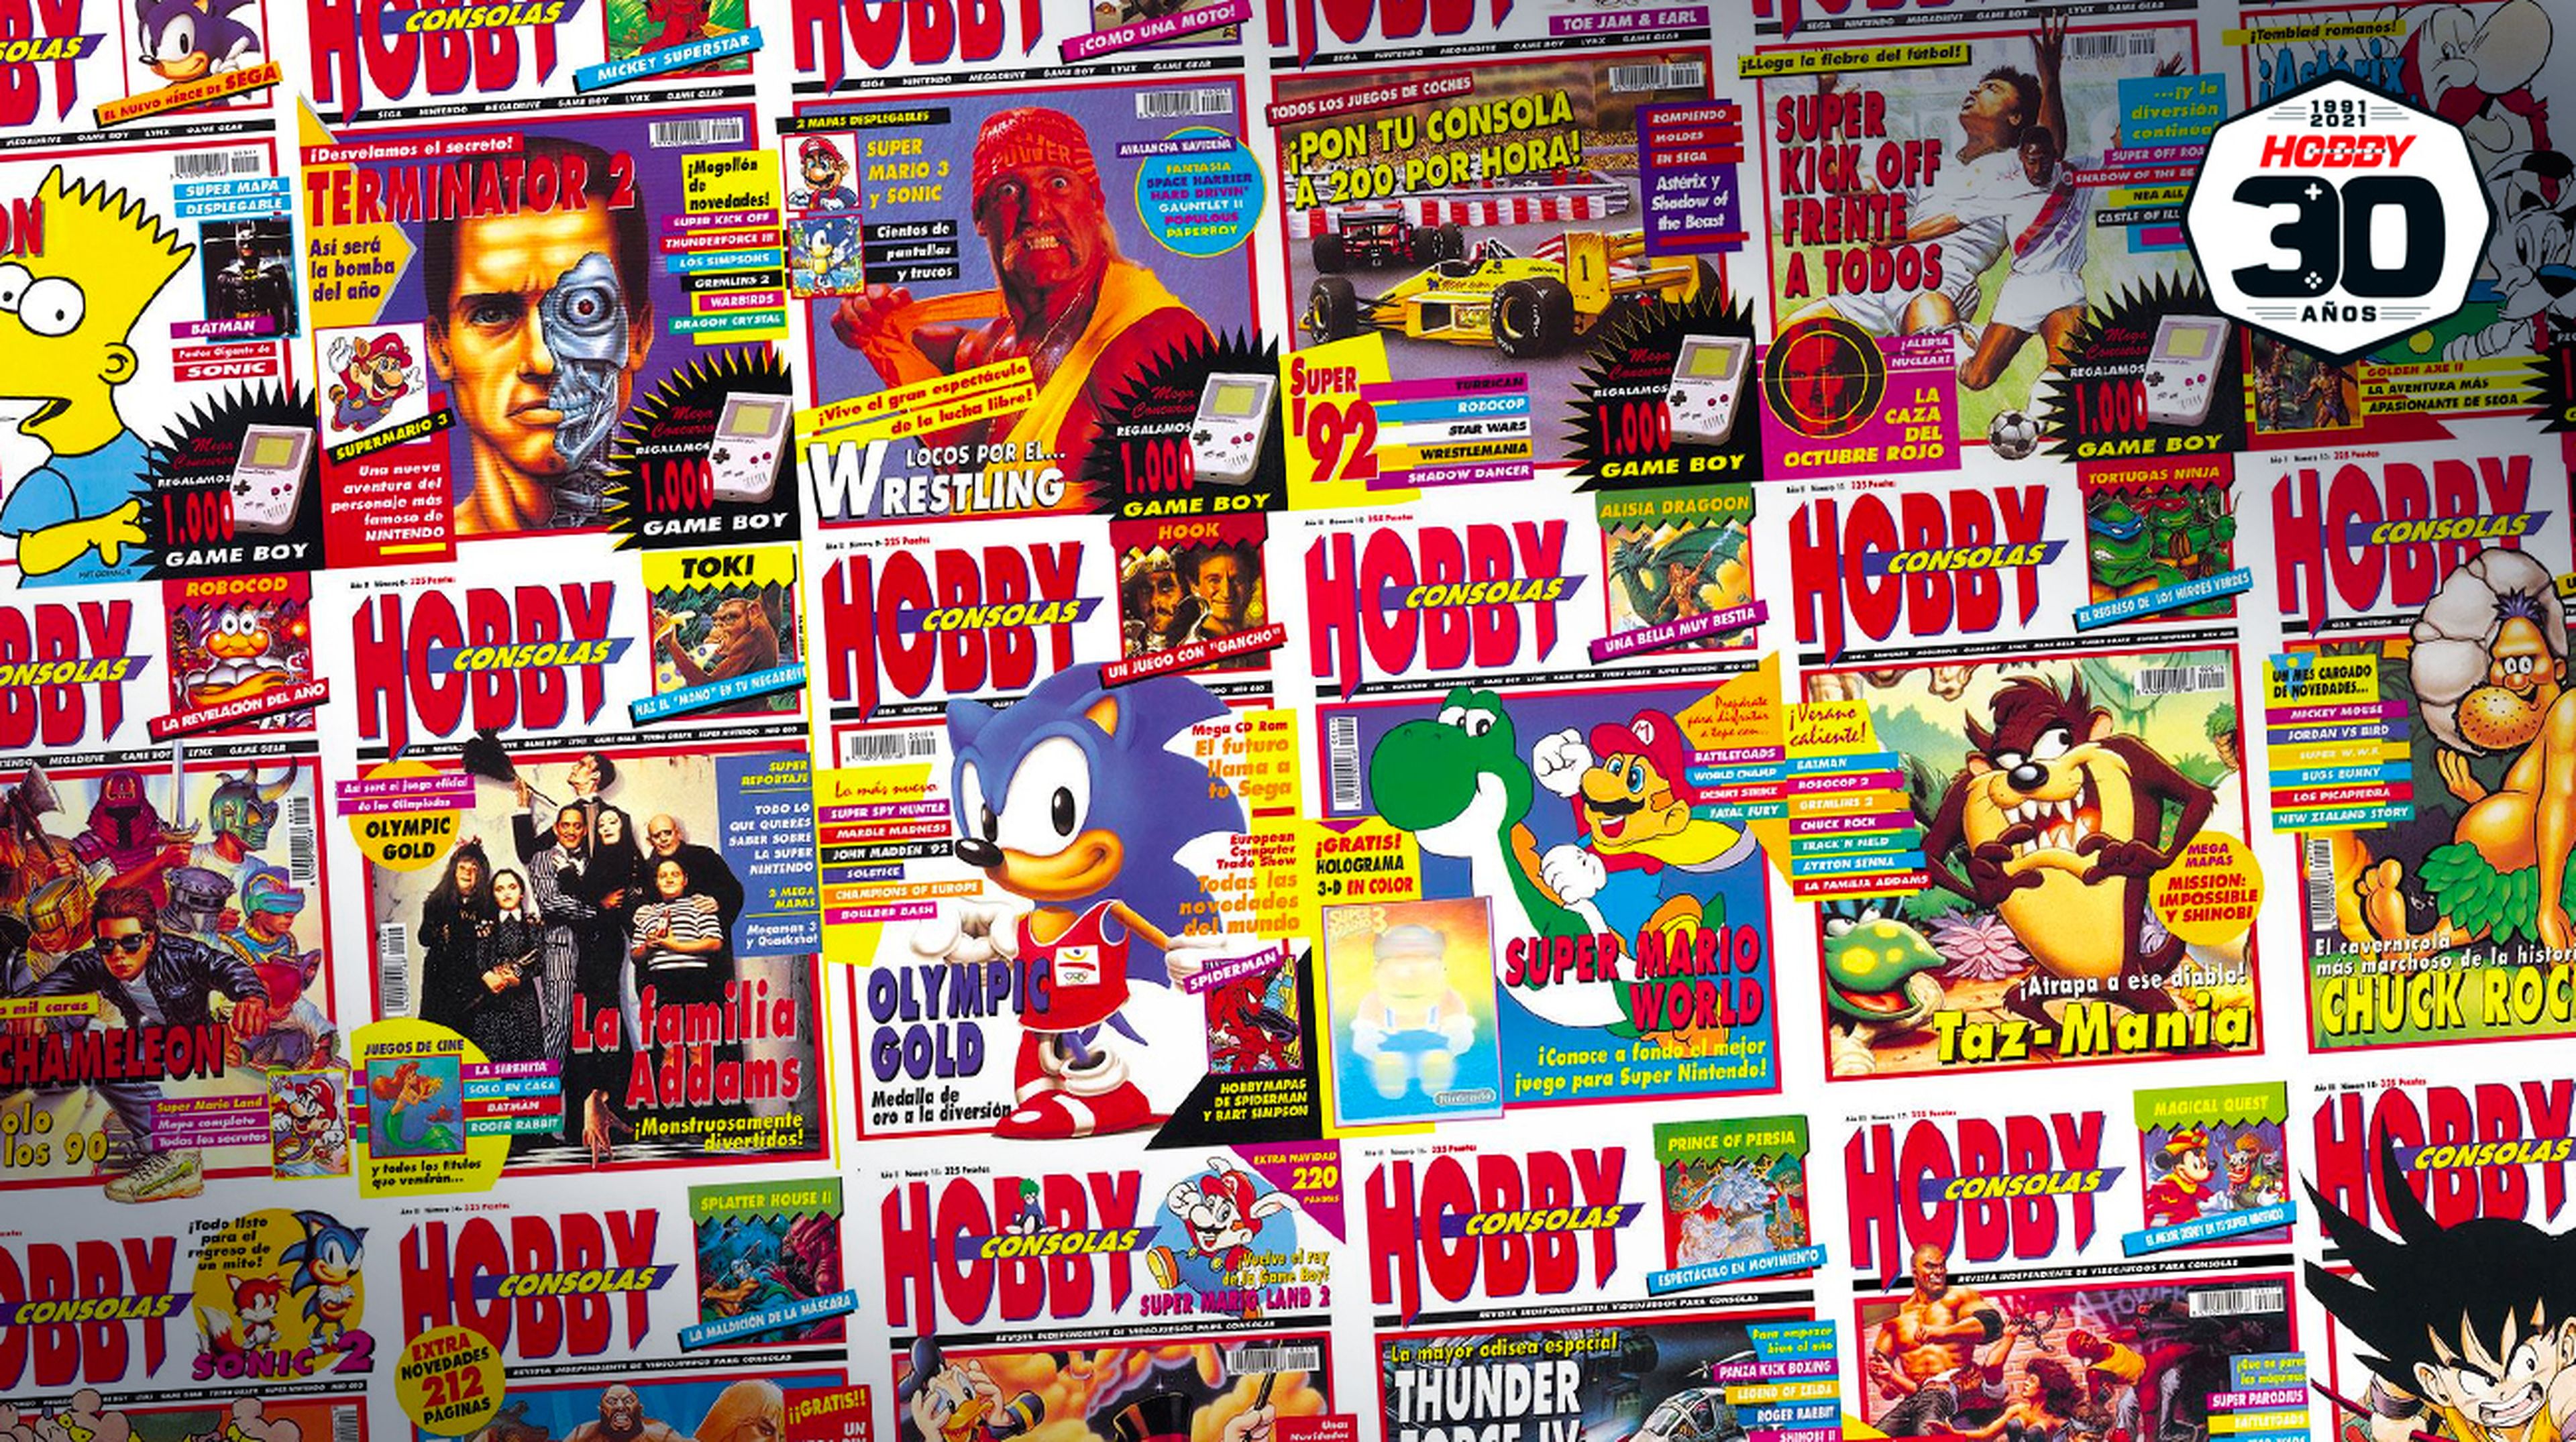 Bienvenidos al 30 aniversario de Hobby Consolas